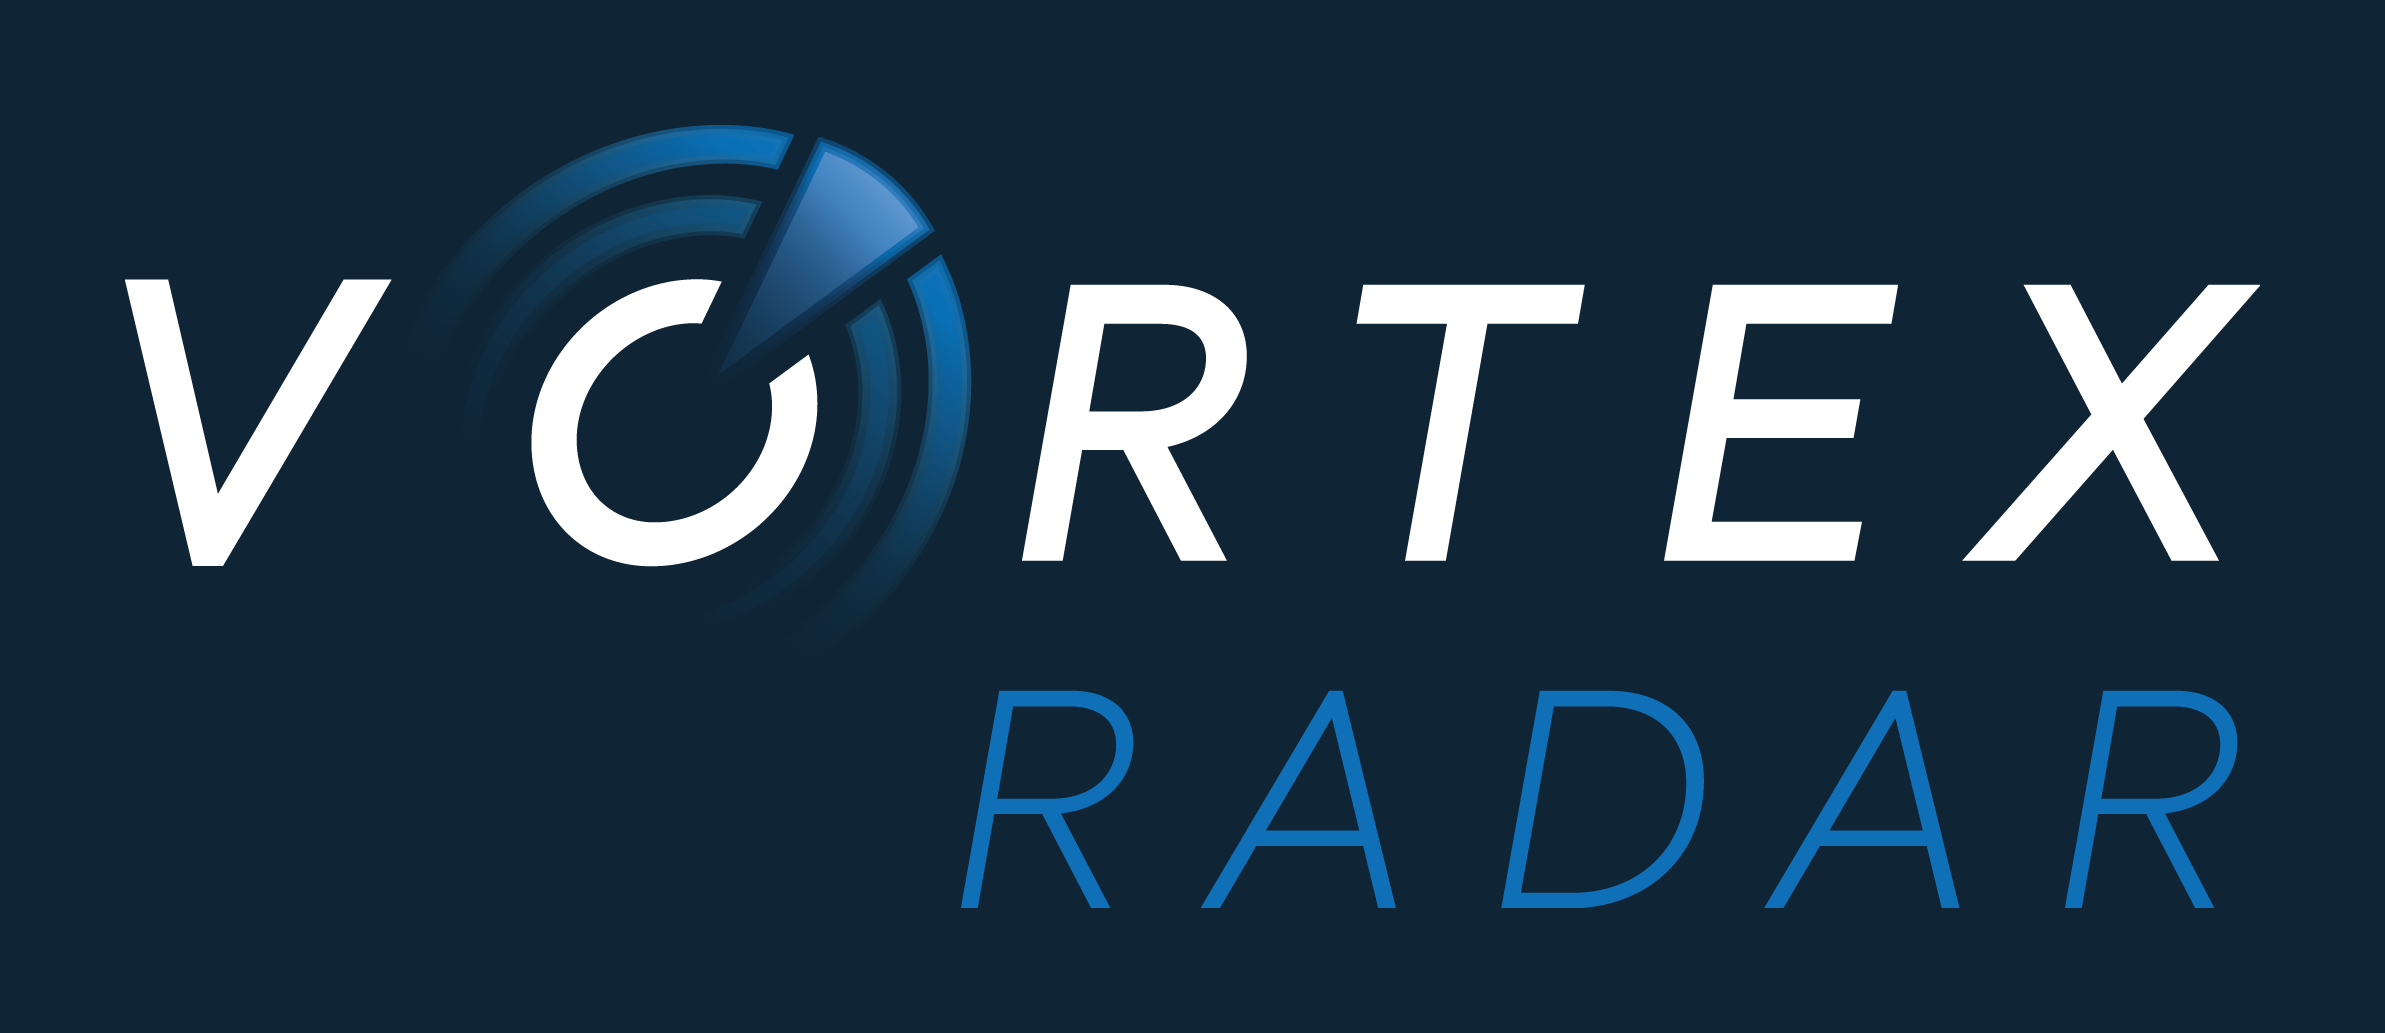 https://www.vortexradar.com/wp-content/uploads/2020/02/Vortex-Radar-logo-blue-background-high-res.png